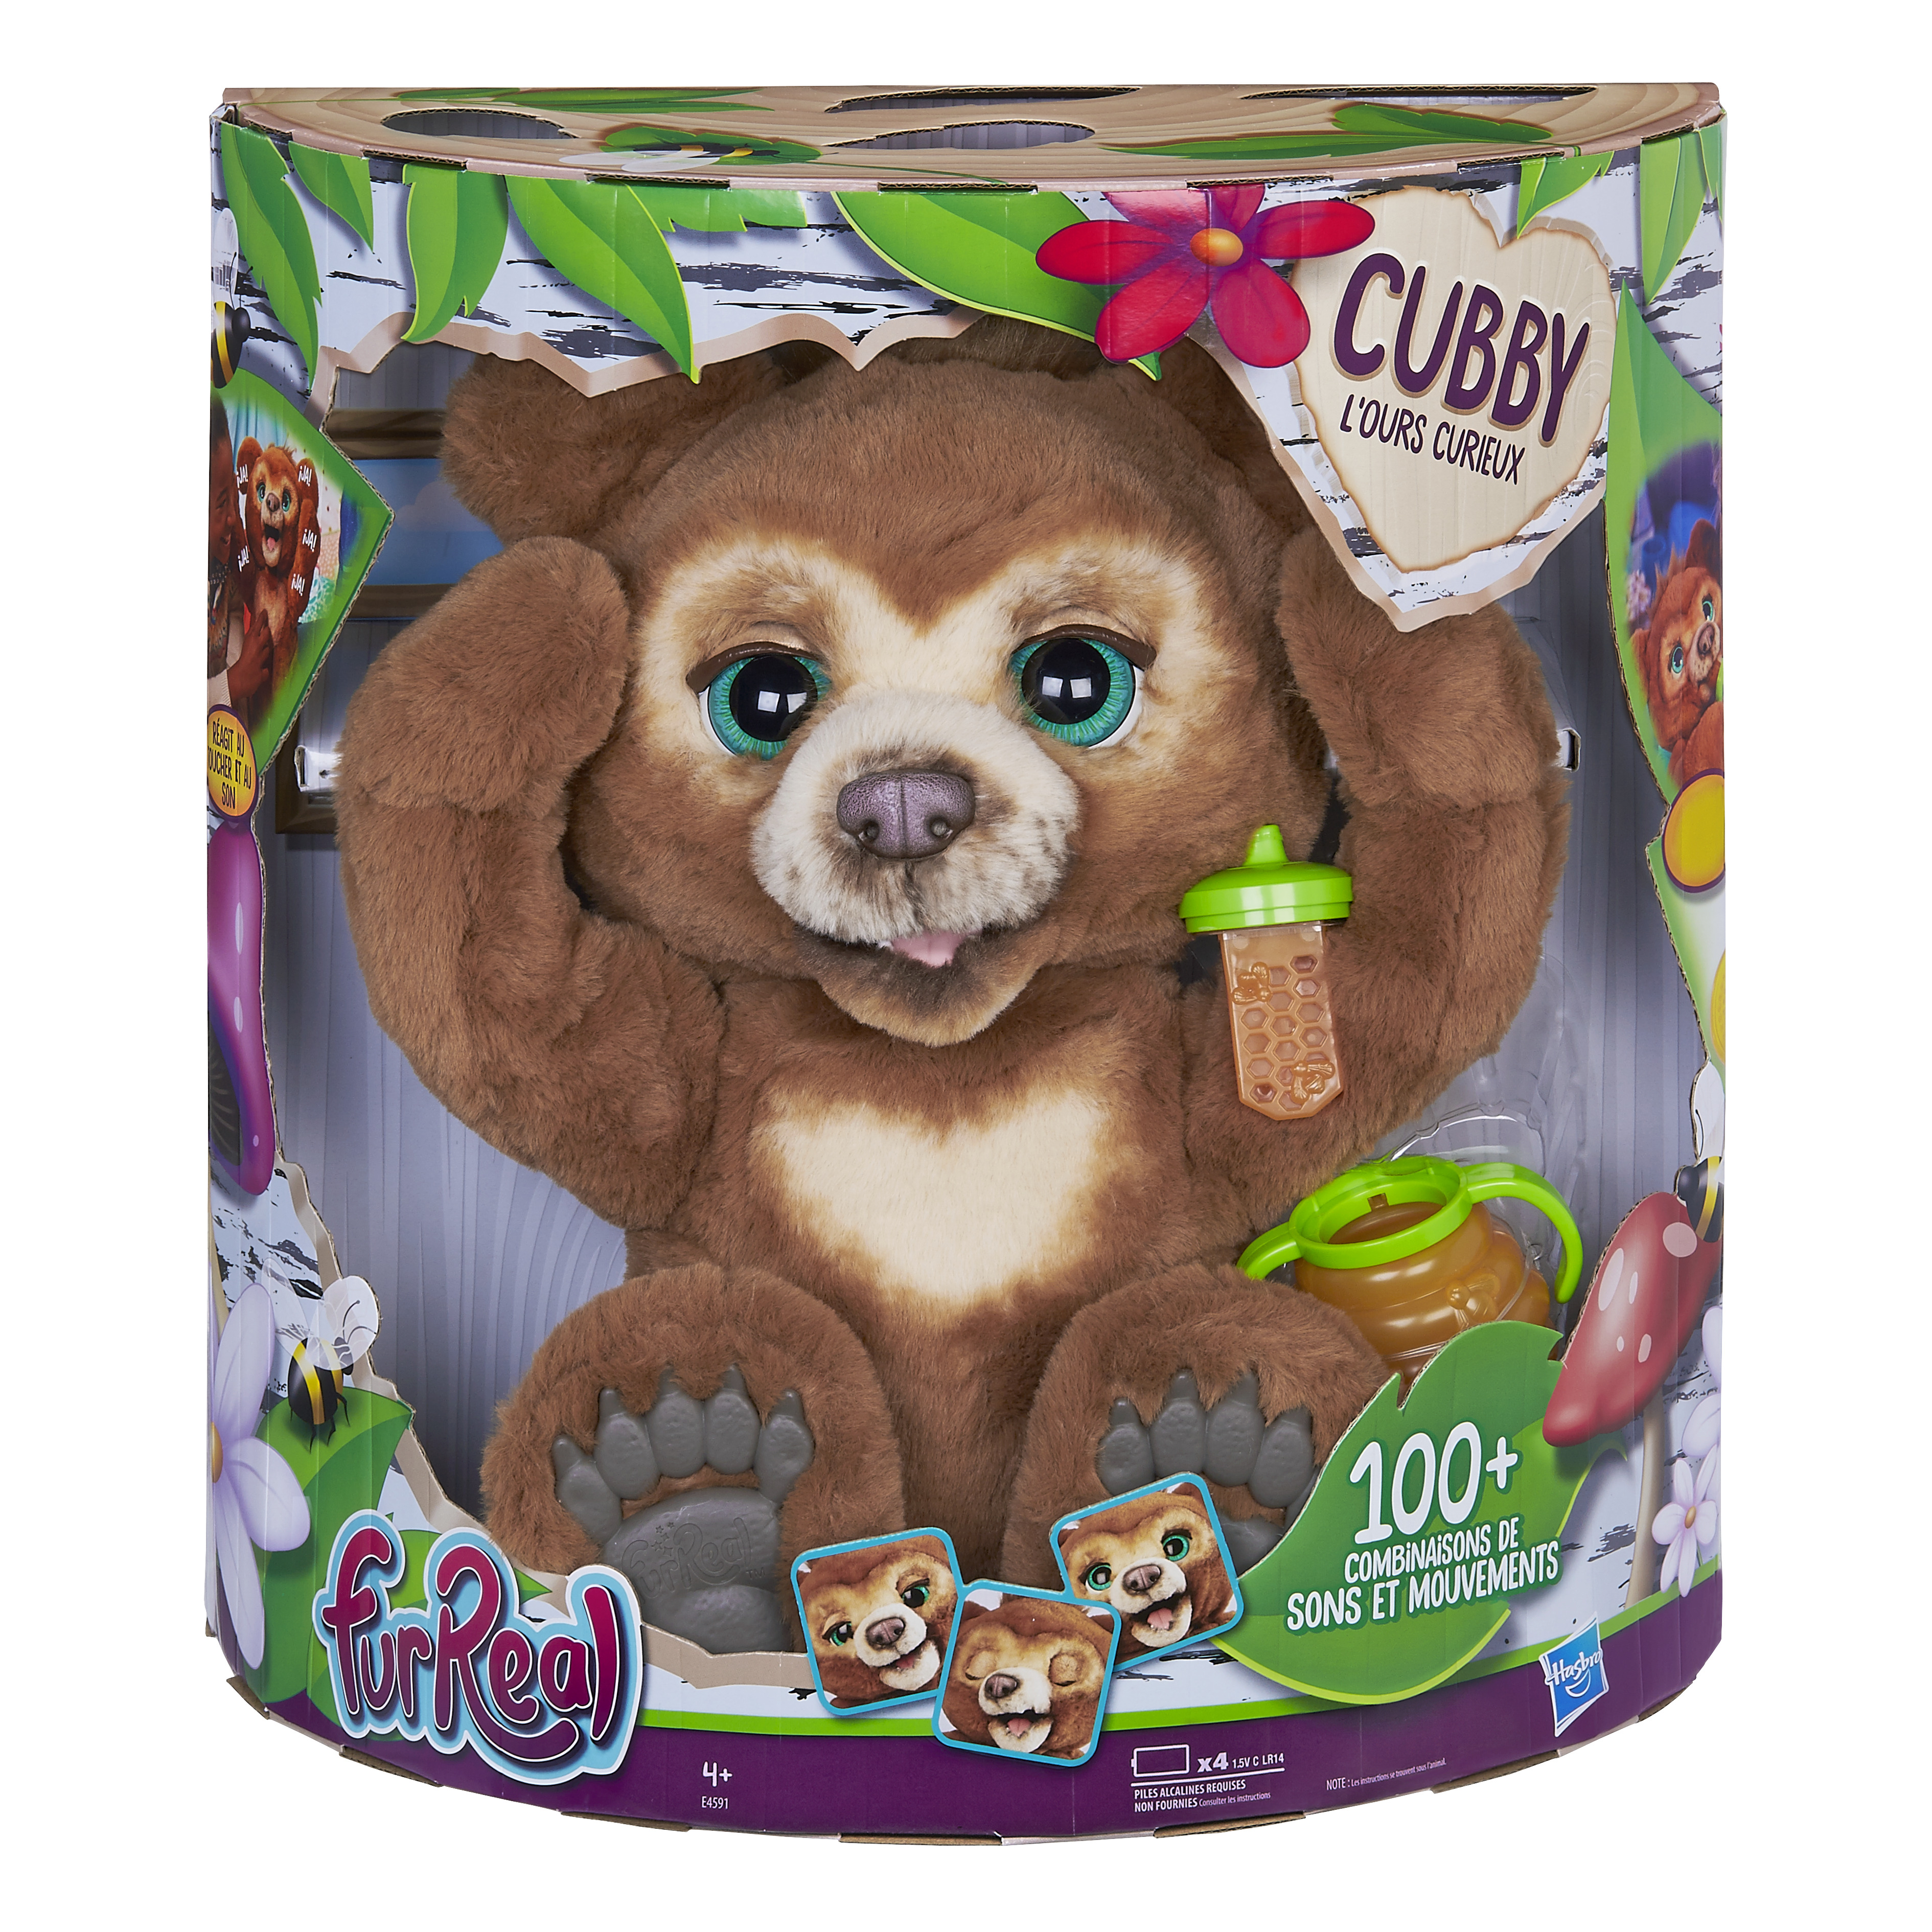 Cubby L’ours curieux